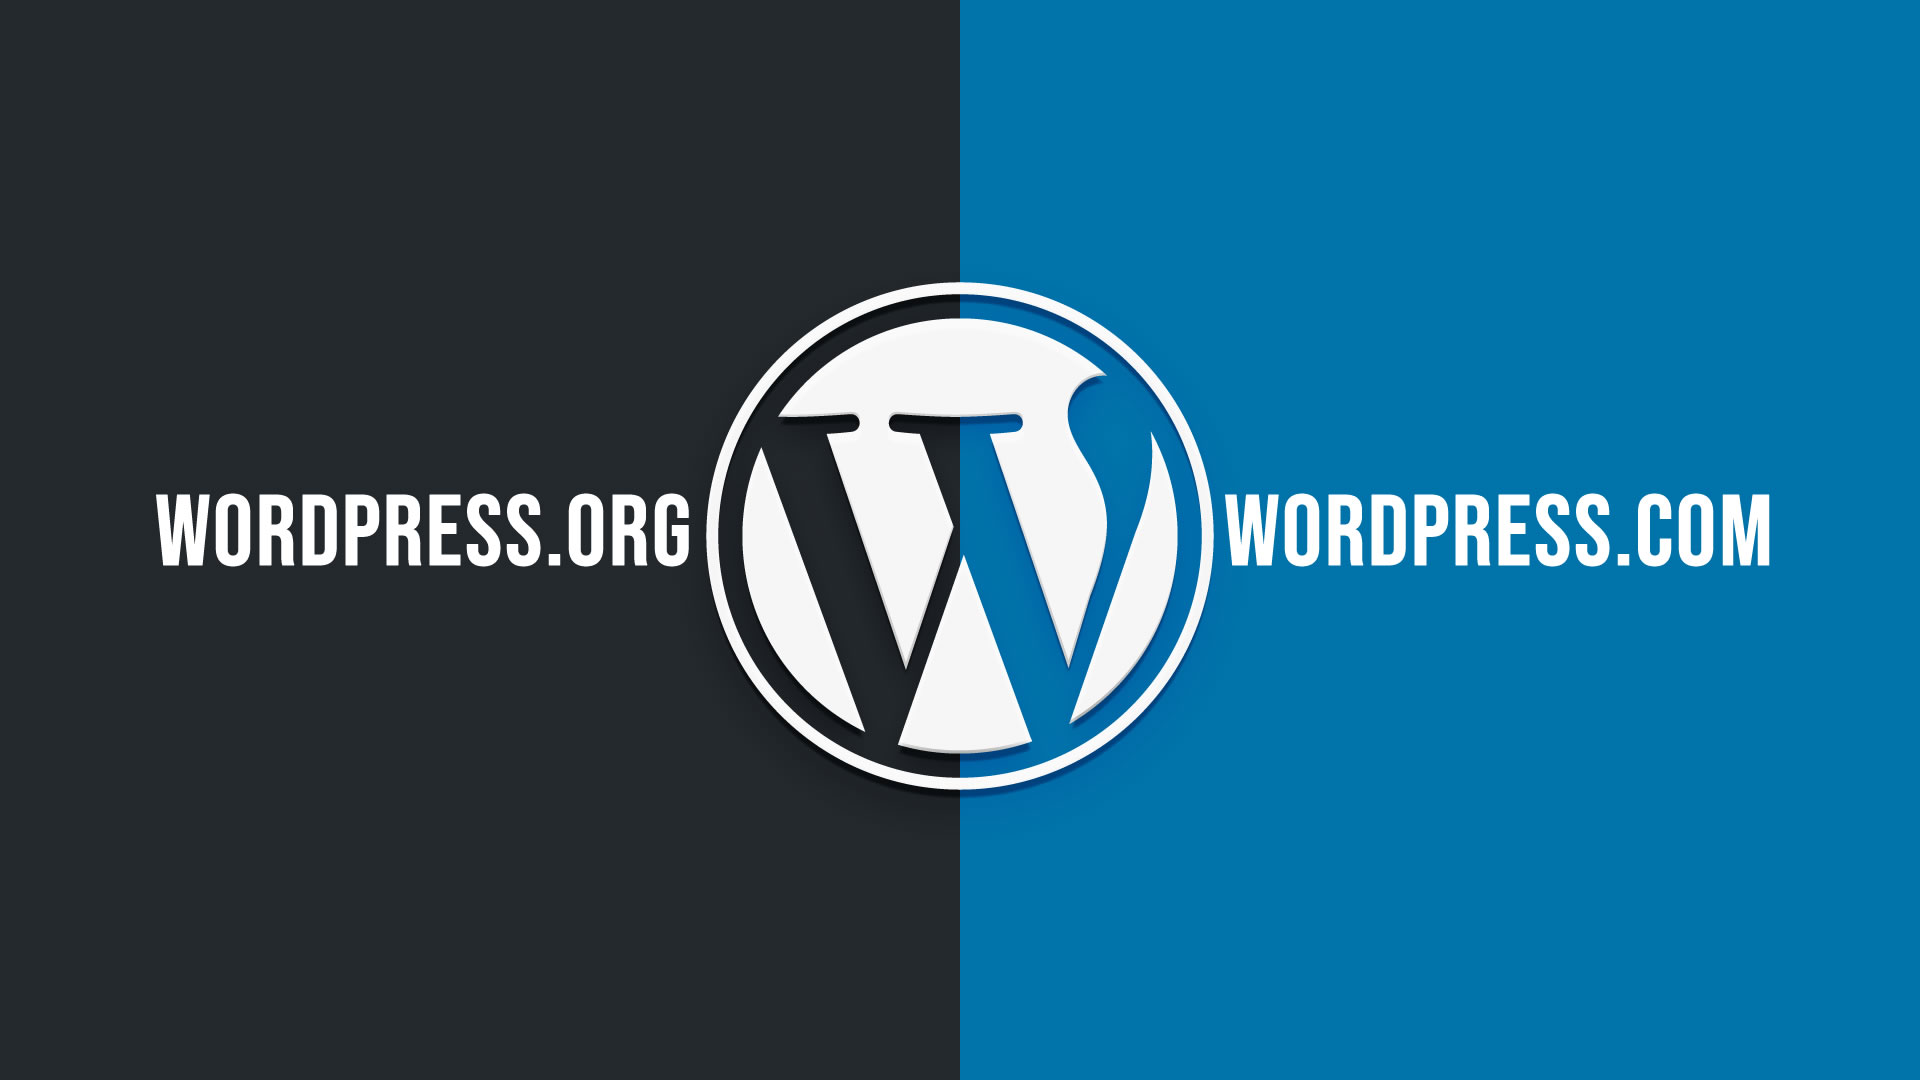 Descubra a diferença do wordpress.com e wordpress.org